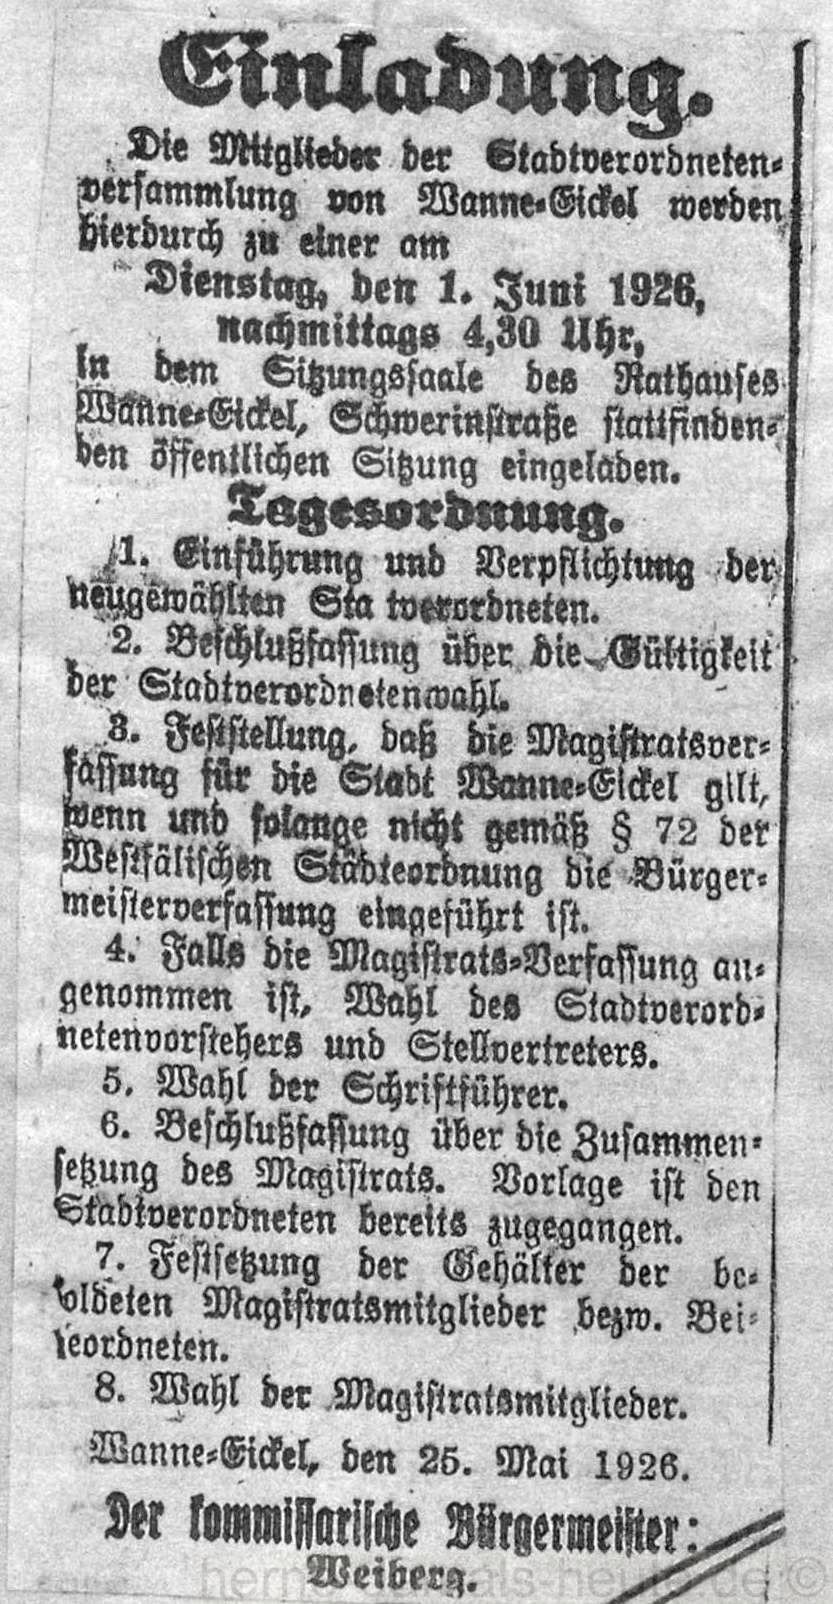 Wanne-Eickeler Zeitung vom 26.05.1926, Repro Stadtarchiv Herne